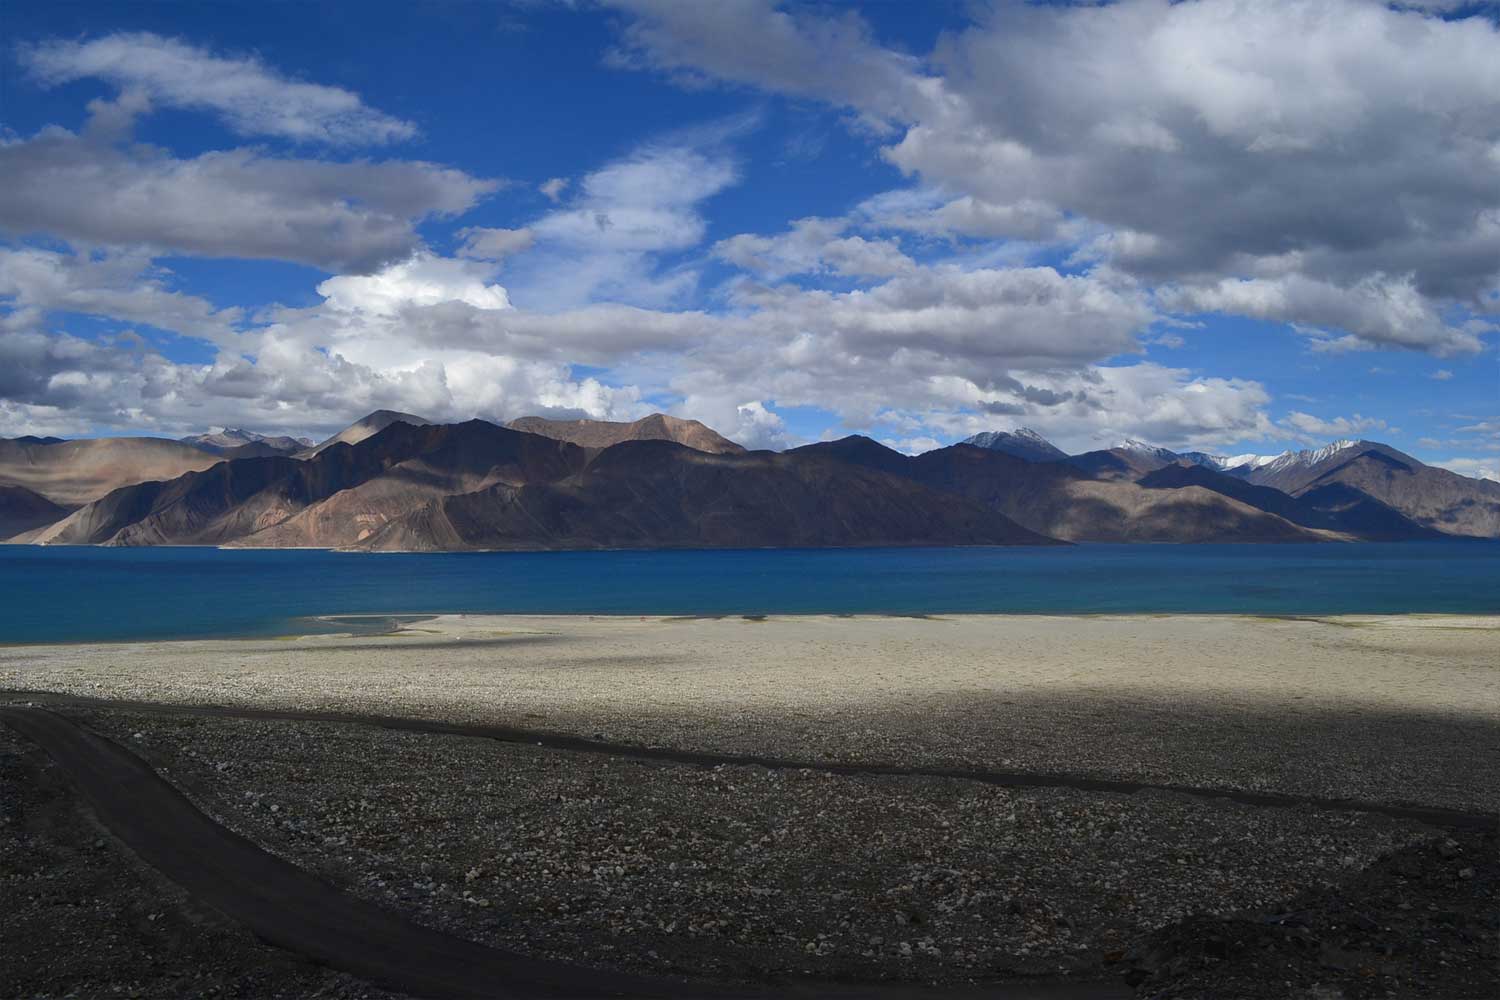 Ladakh Mountain Tour & Travels